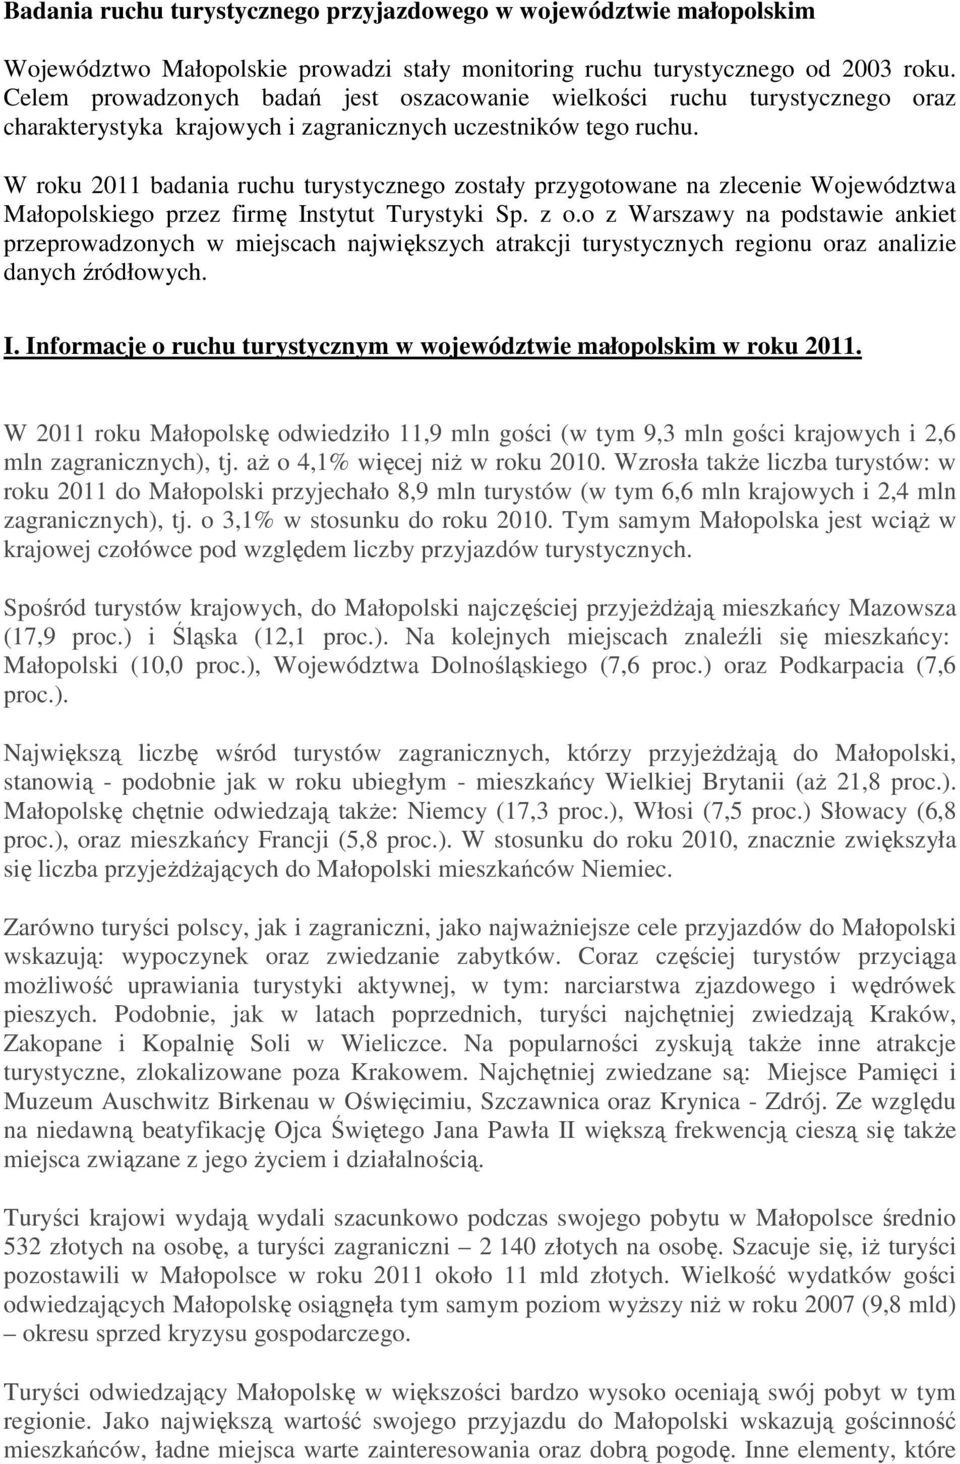 W roku 2011 badania ruchu turystycznego zostały przygotowane na zlecenie Województwa Małopolskiego przez firmę Instytut Turystyki Sp. z o.